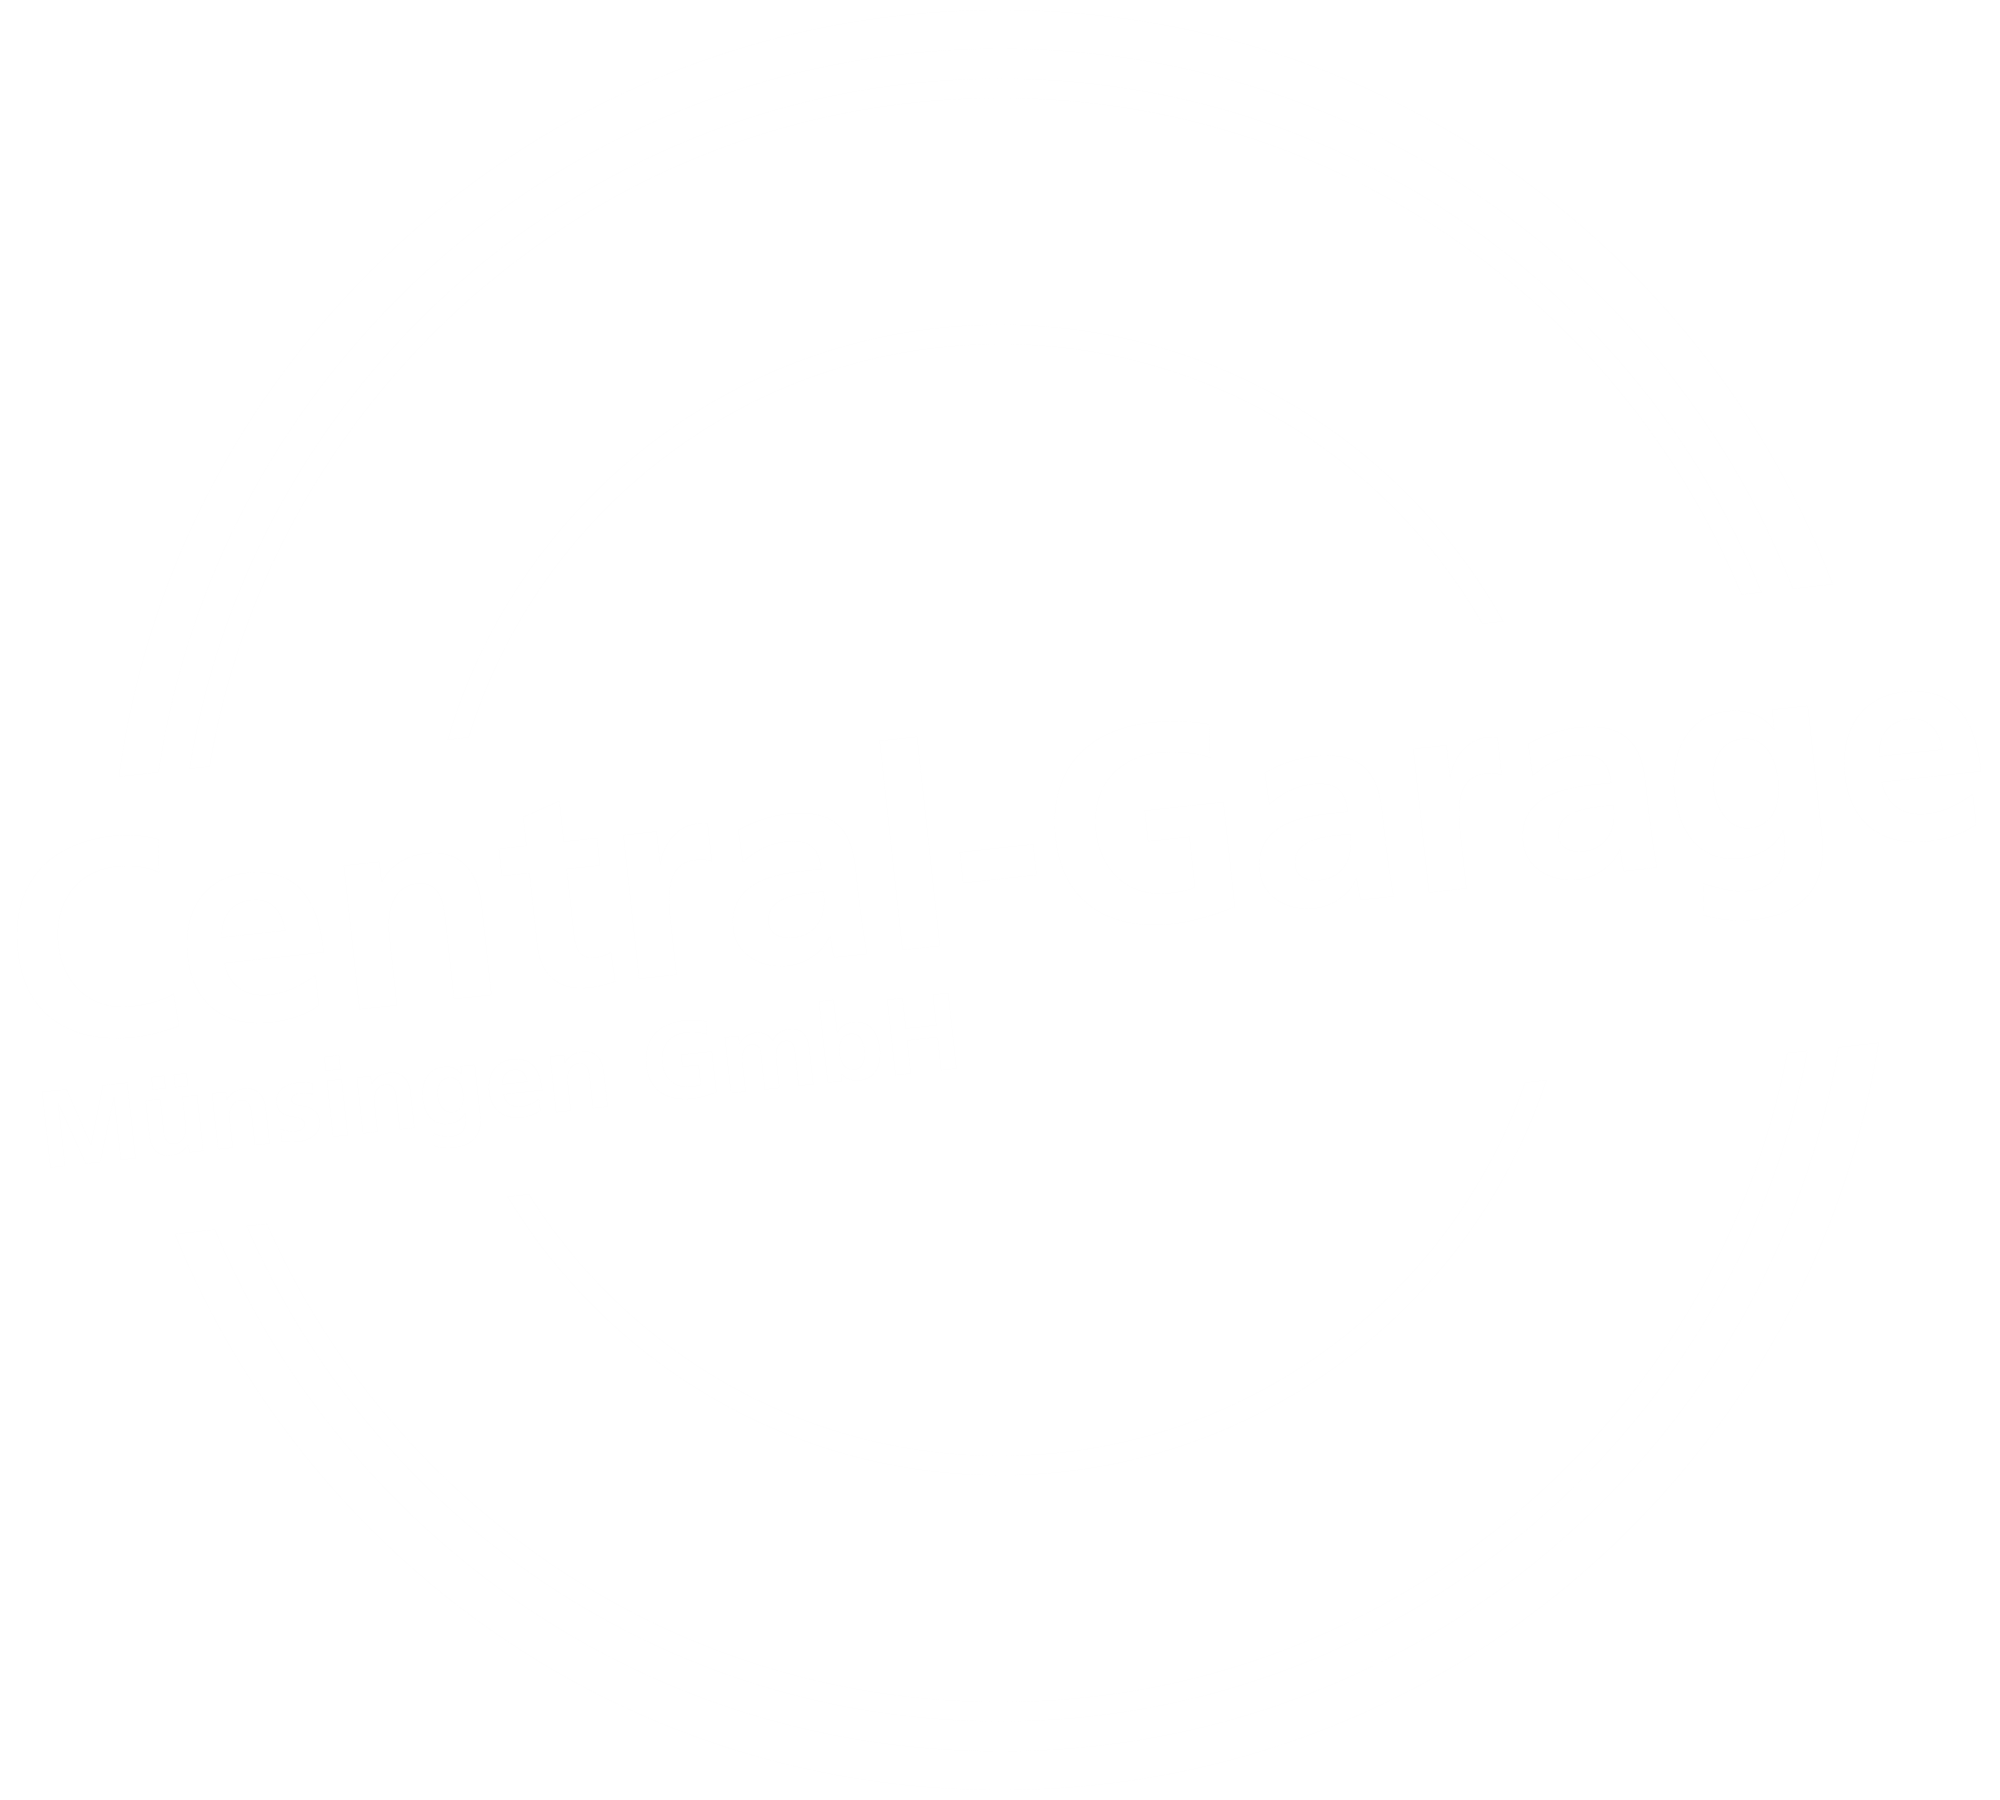 Central-Garage Münsingen GmbH